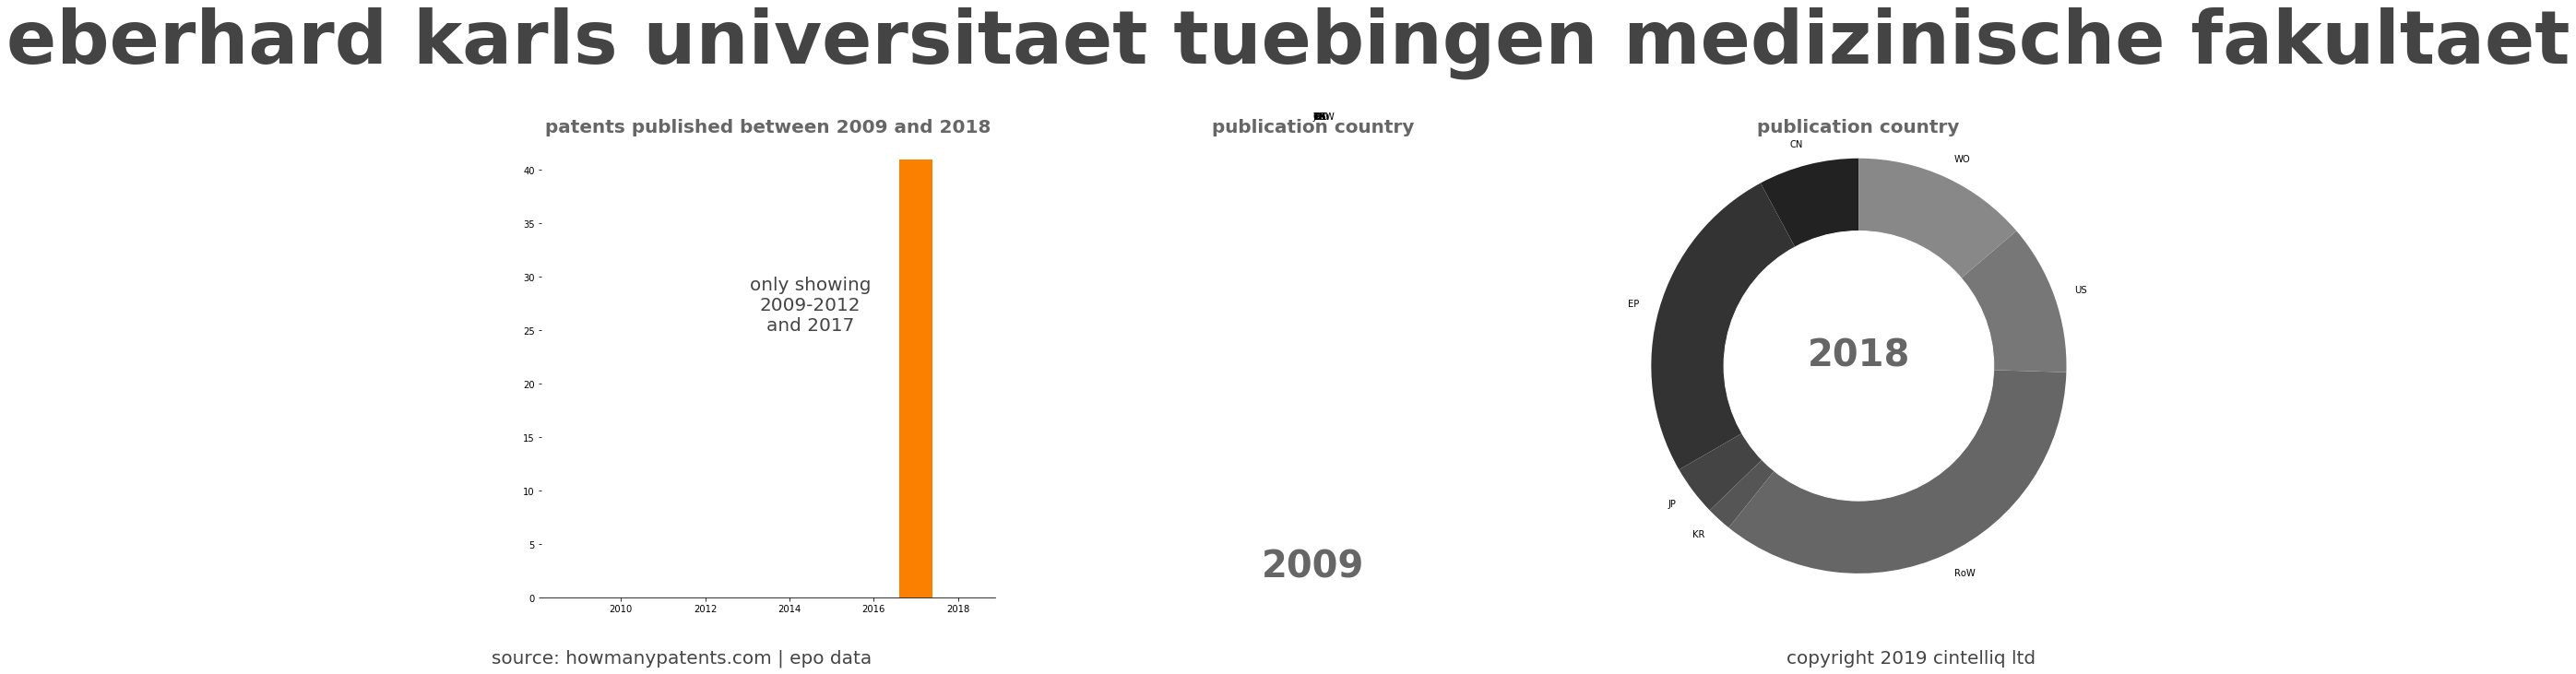 summary of patents for Eberhard Karls Universitaet Tuebingen Medizinische Fakultaet